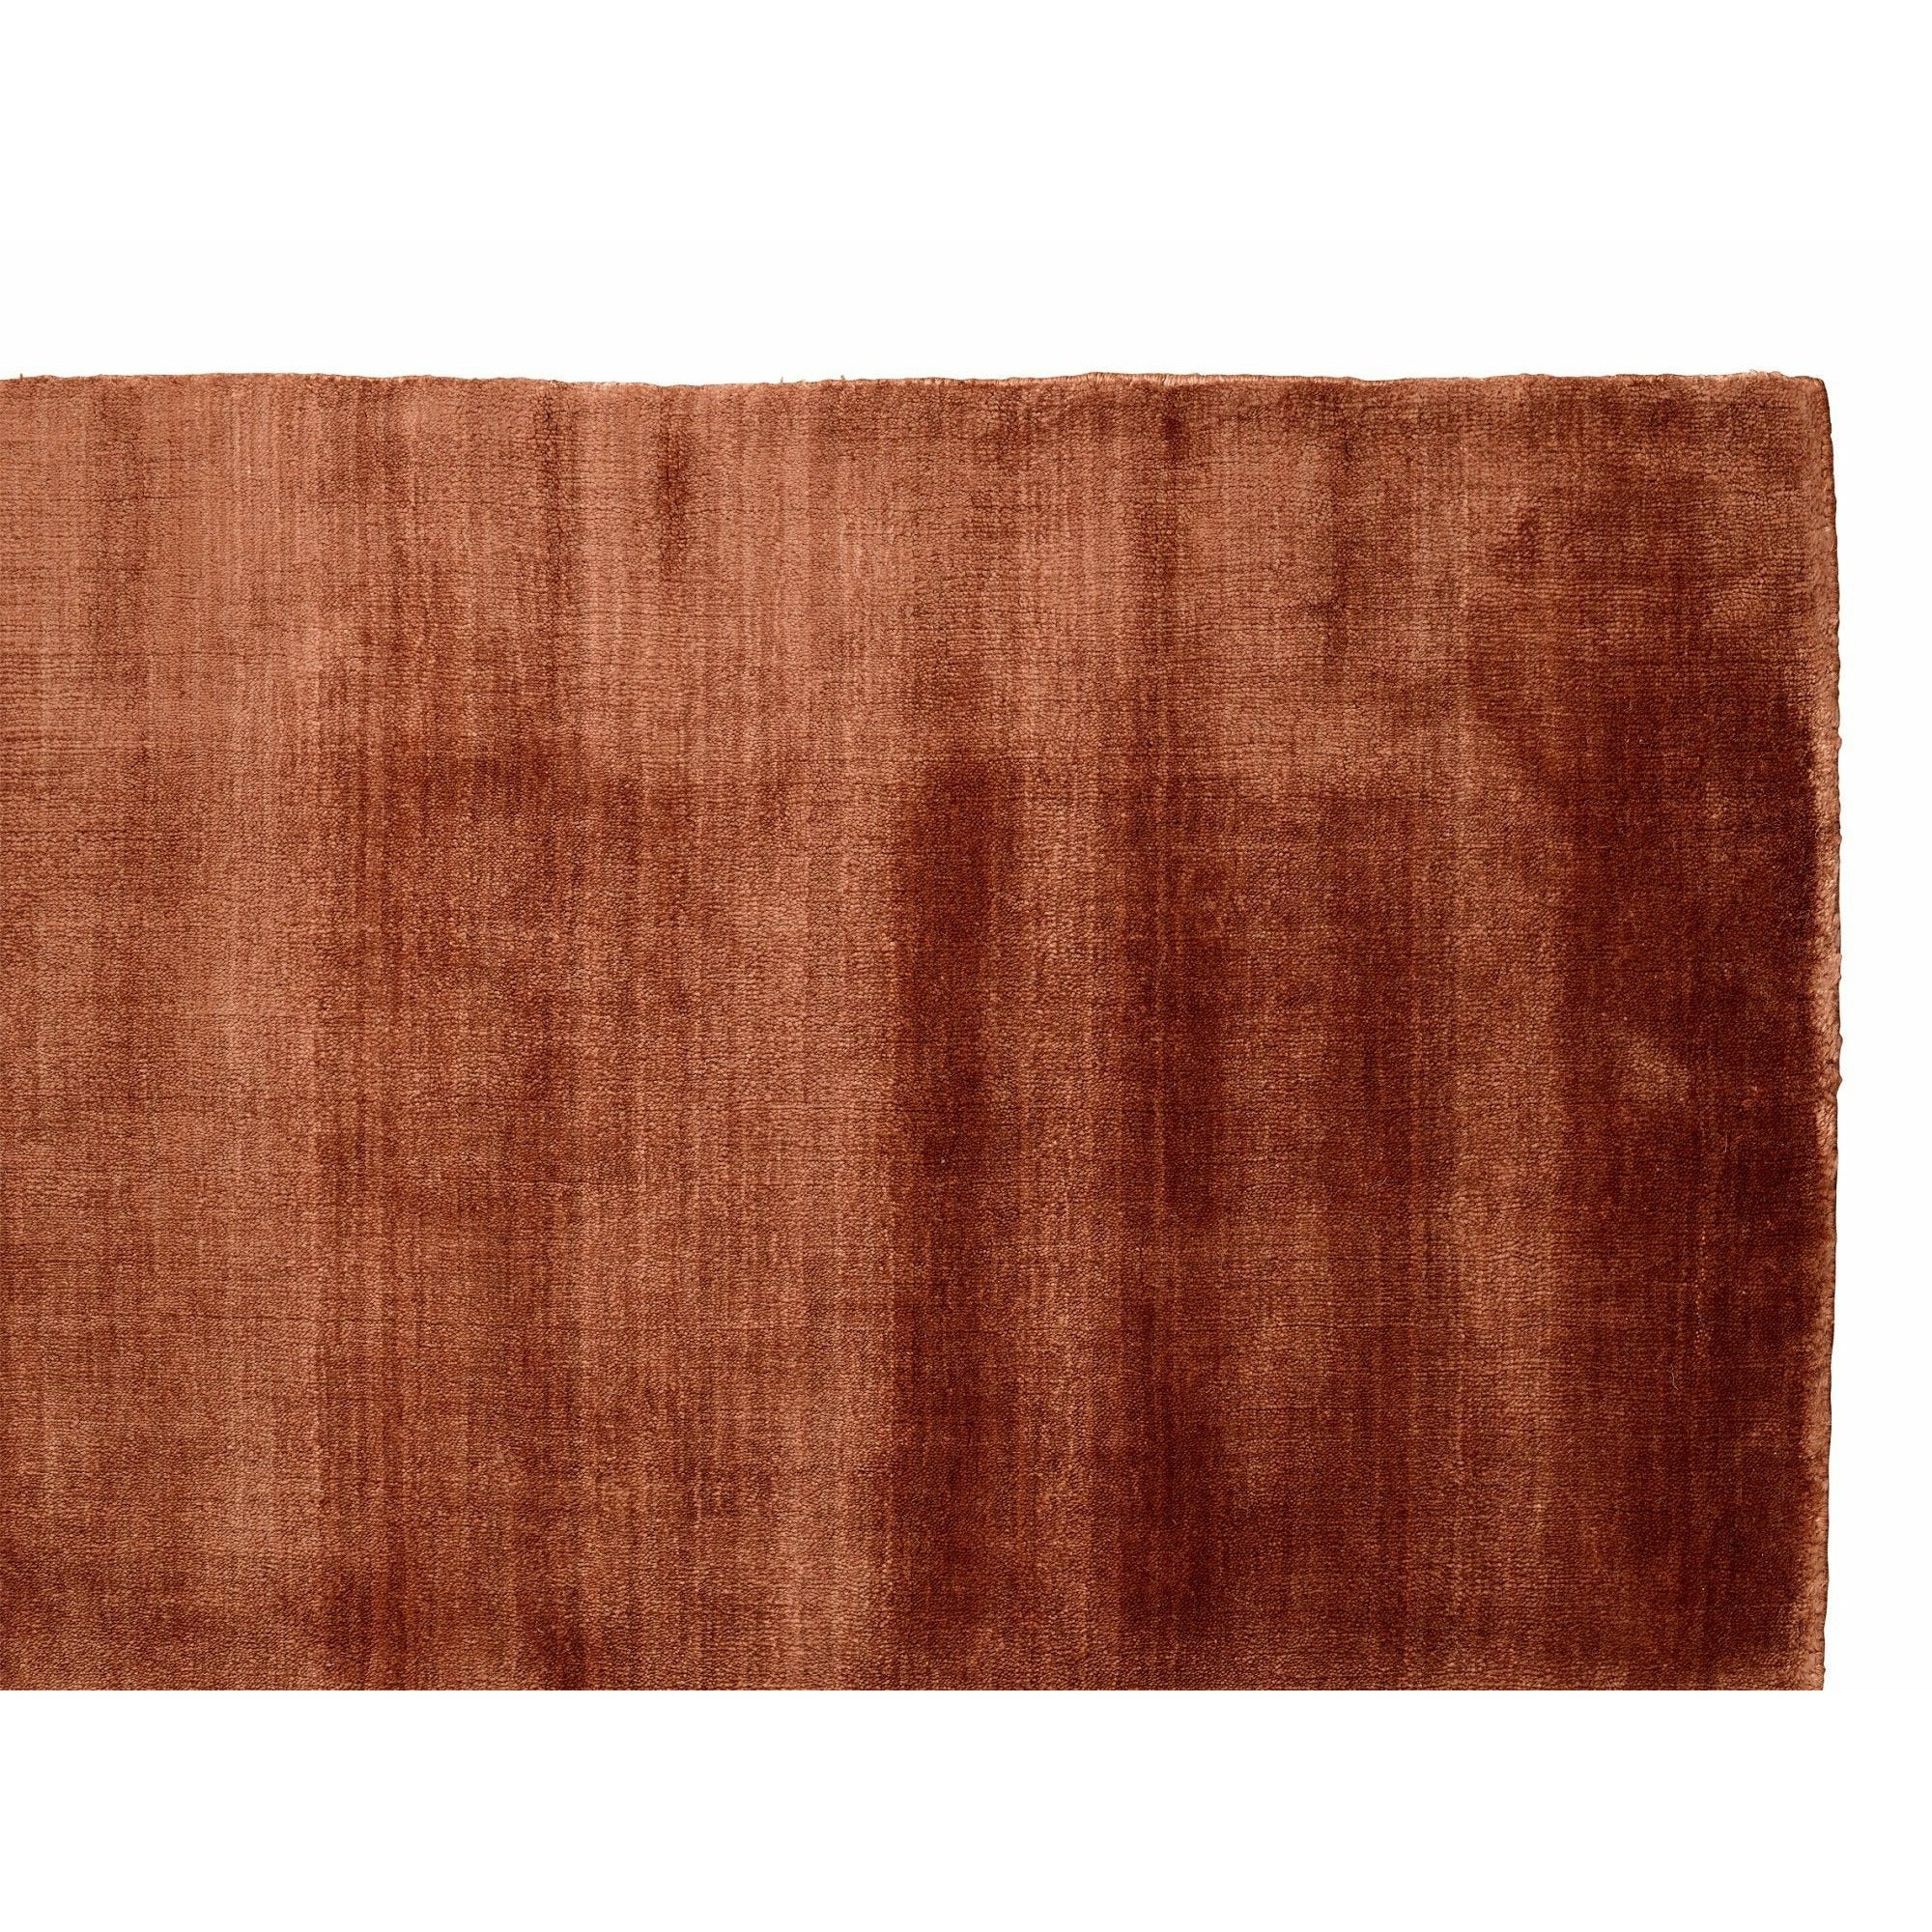 Massimo Bambus-Teppich Kupfer, 250x300 cm